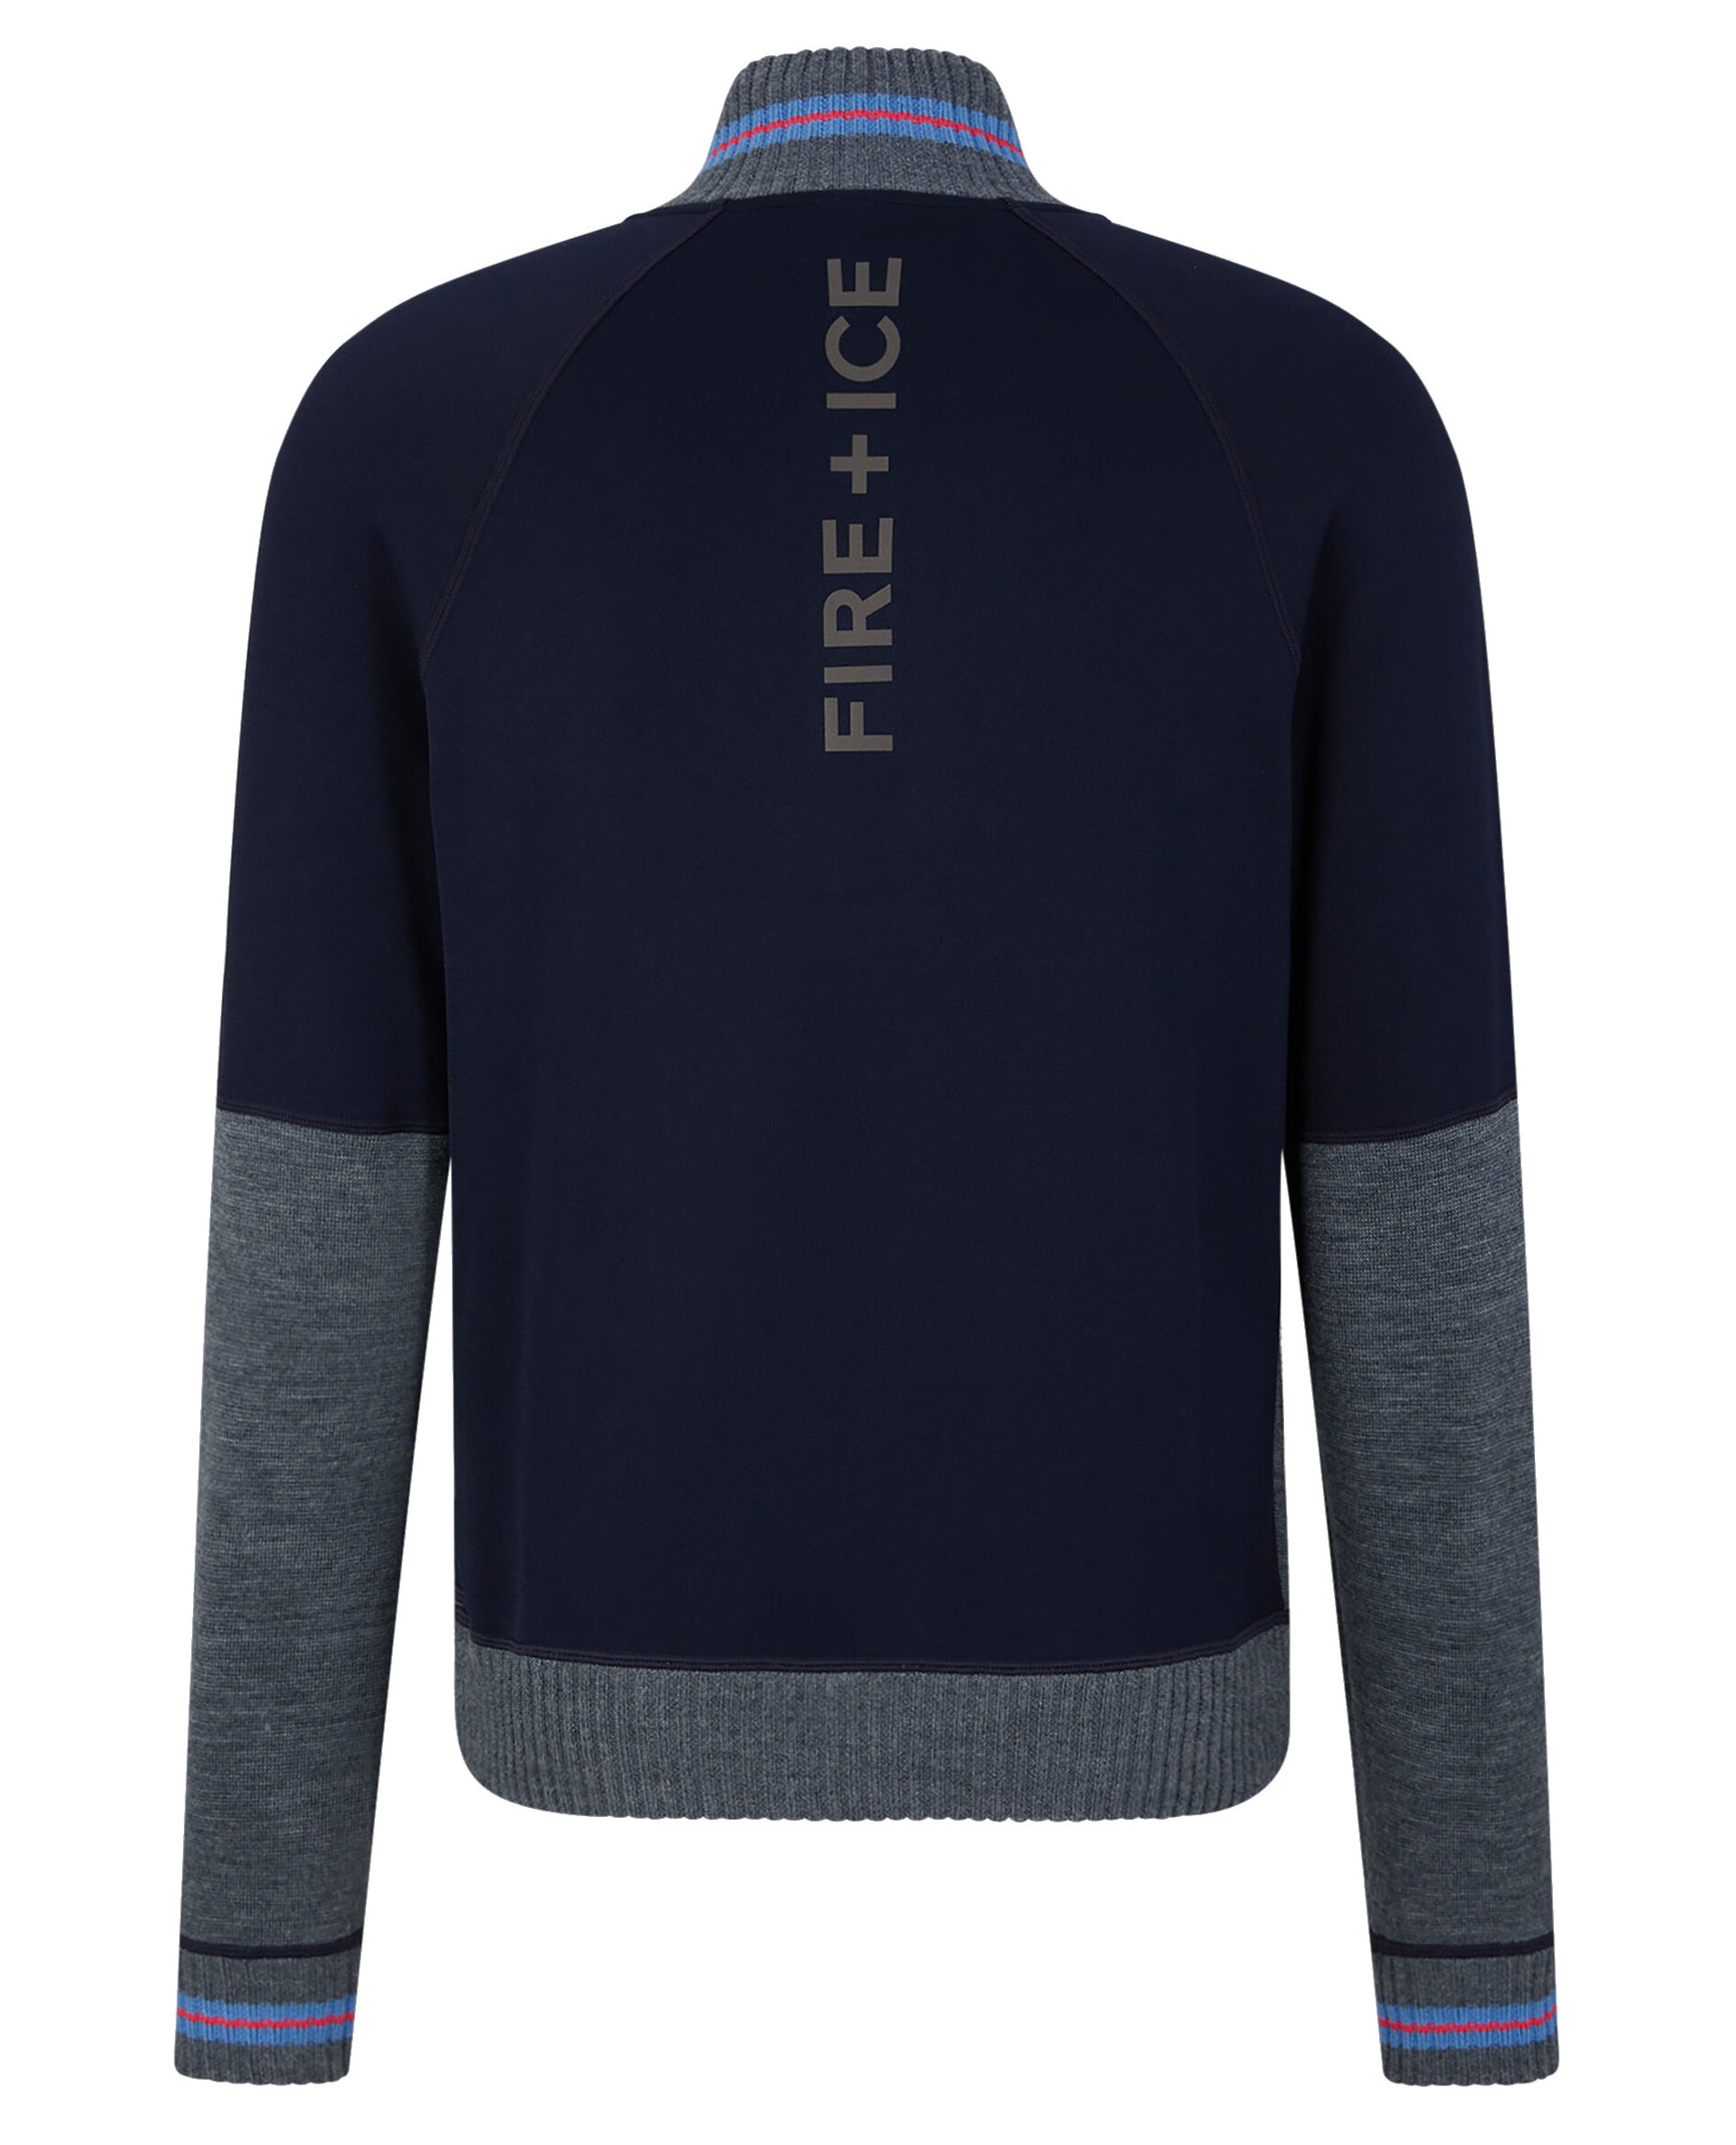 Bogner Fire + Ice Hugh Sweater Grey Melange